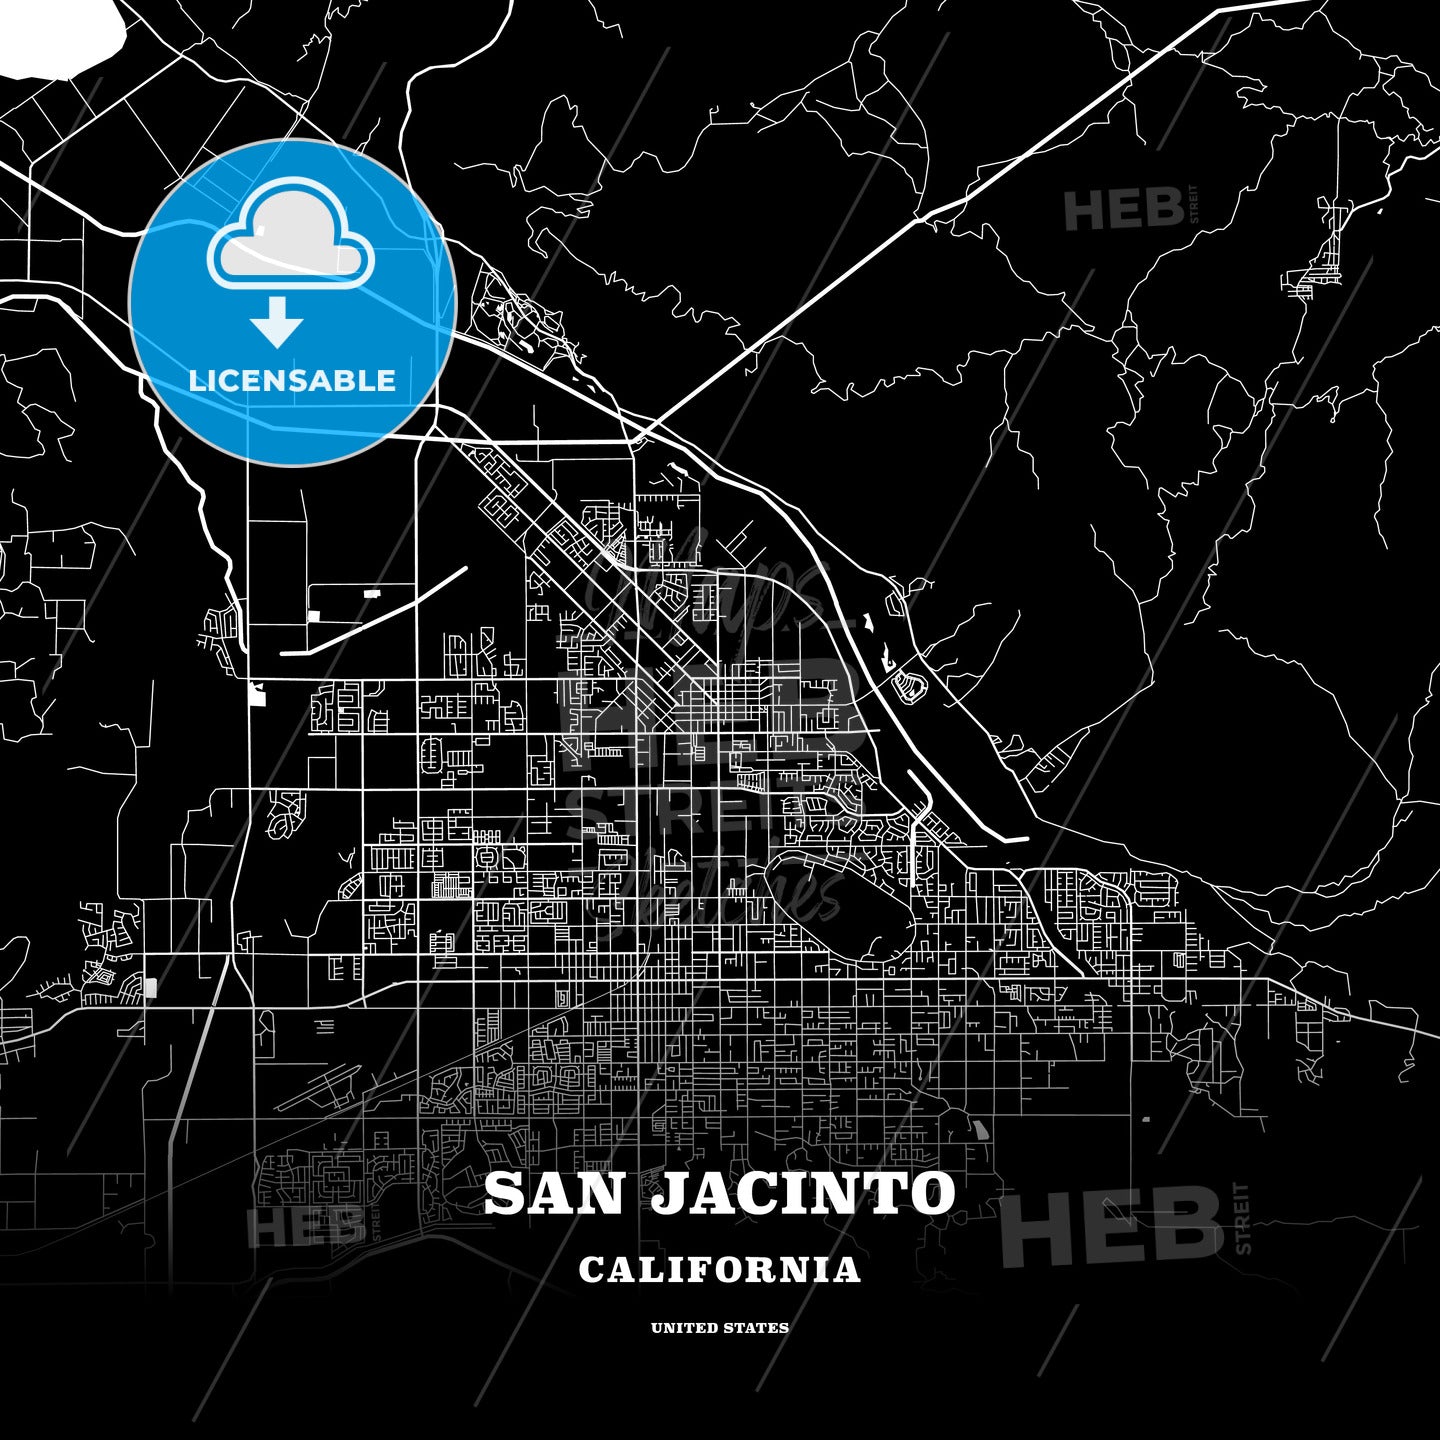 San Jacinto, California, USA map